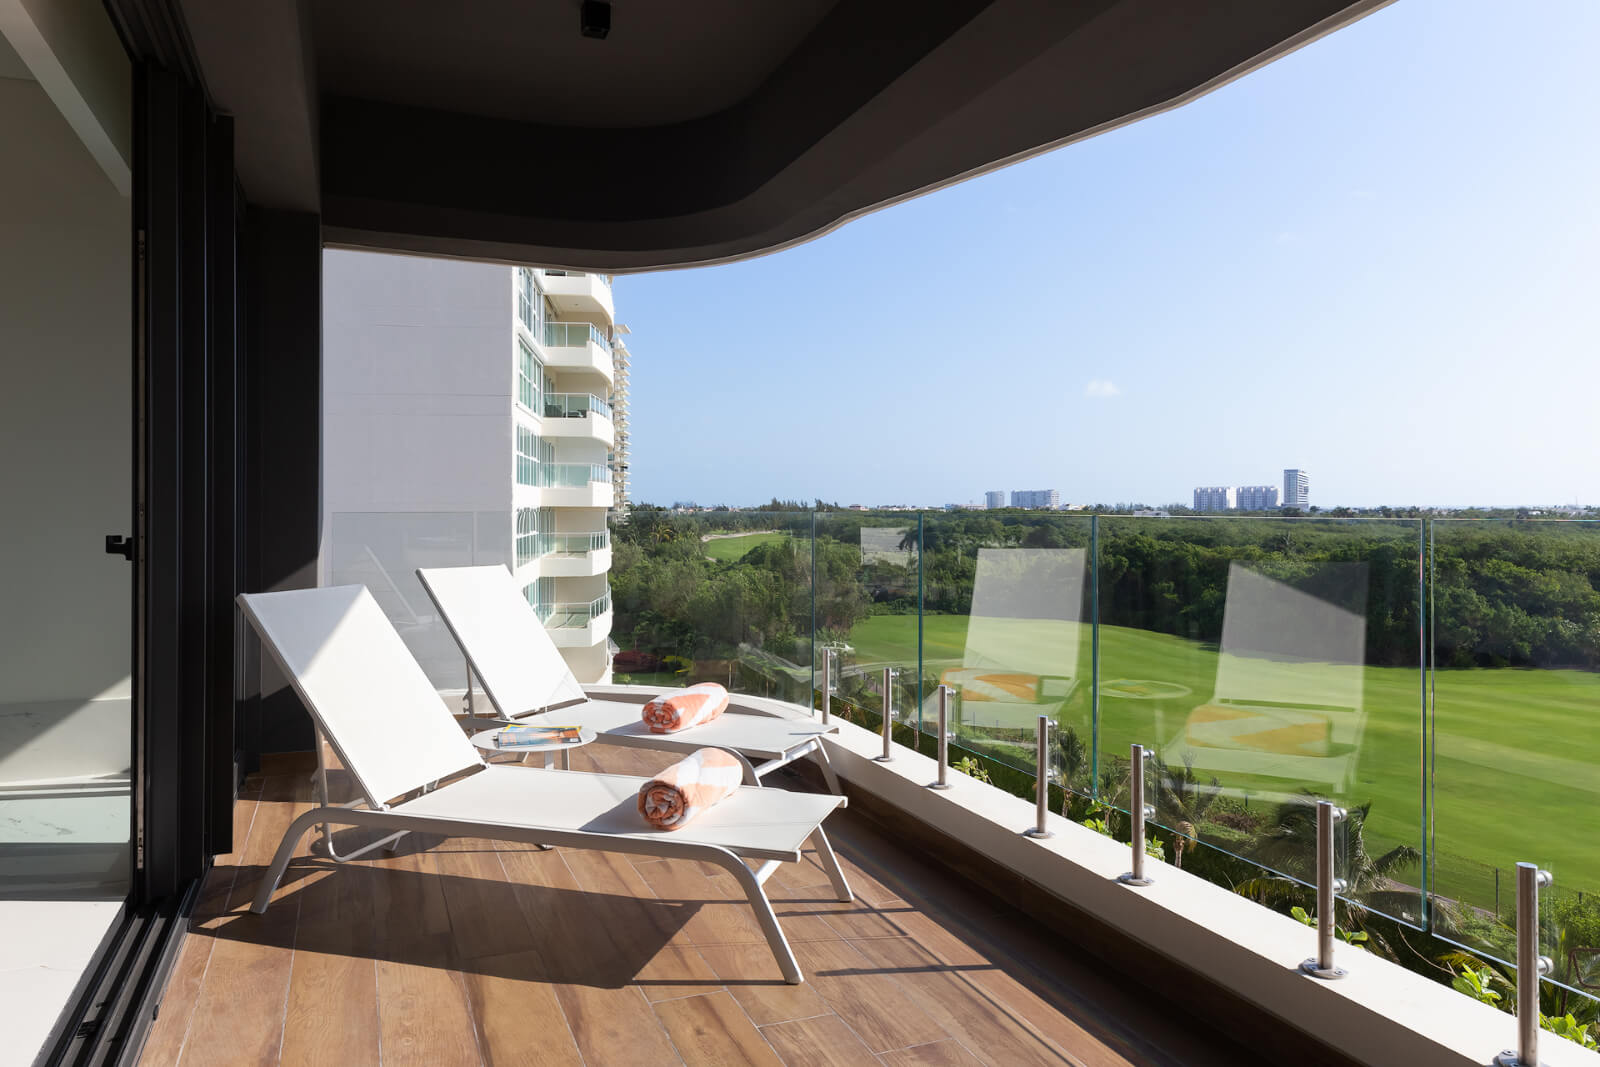 Penthouse, roof garden privado, cuarto de servicio, con vista panorámica, alberca infinity, jacuzzi, snack bar, pre-construccion, Puerto